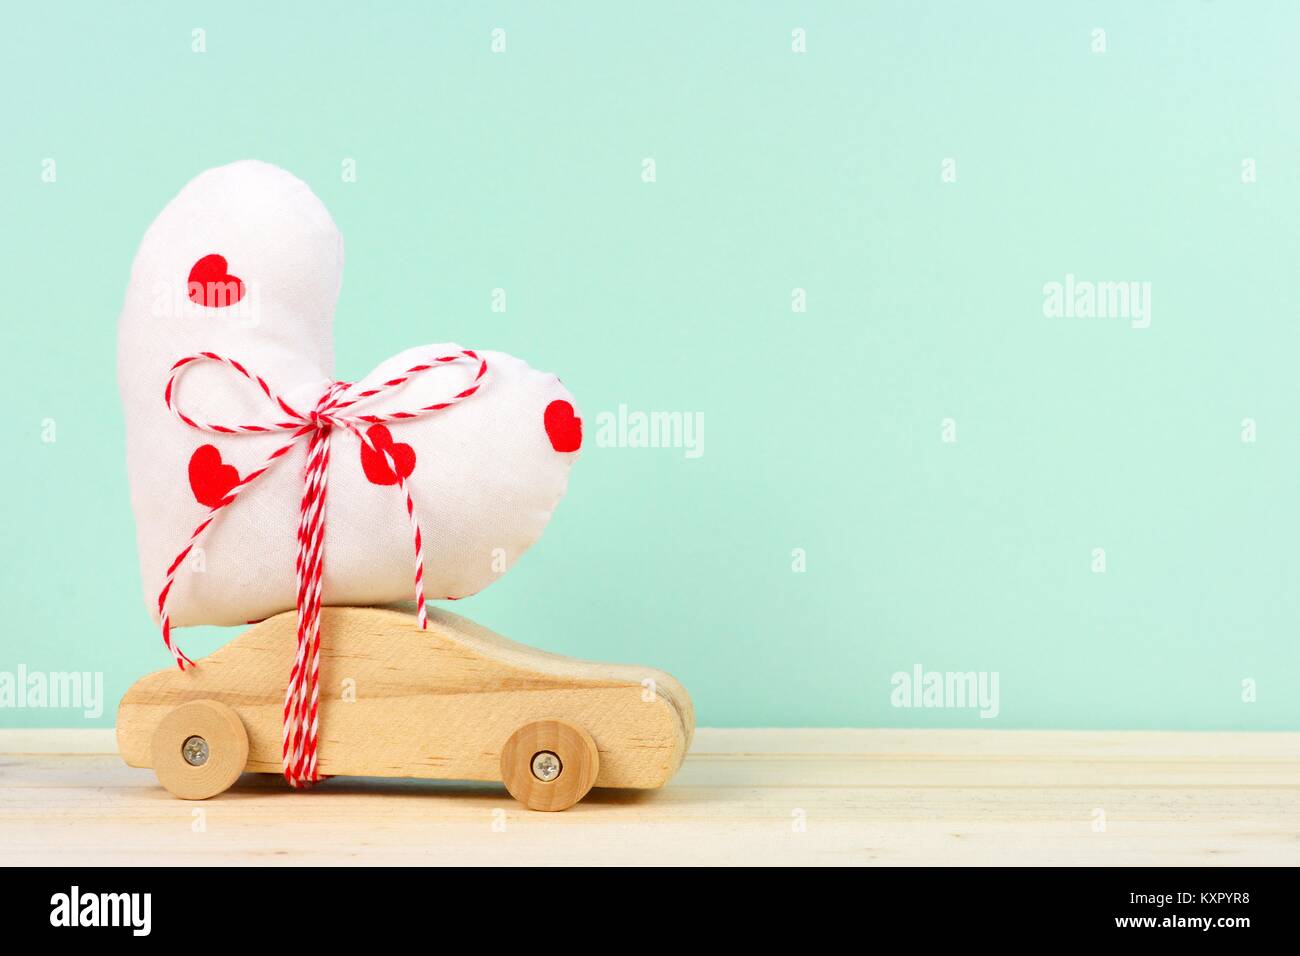 Holzspielzeug mit hausgemachten Herzen Geschenk gegen einen türkisen Hintergrund. Valentines Tag oder Liebe Konzept. Stockfoto